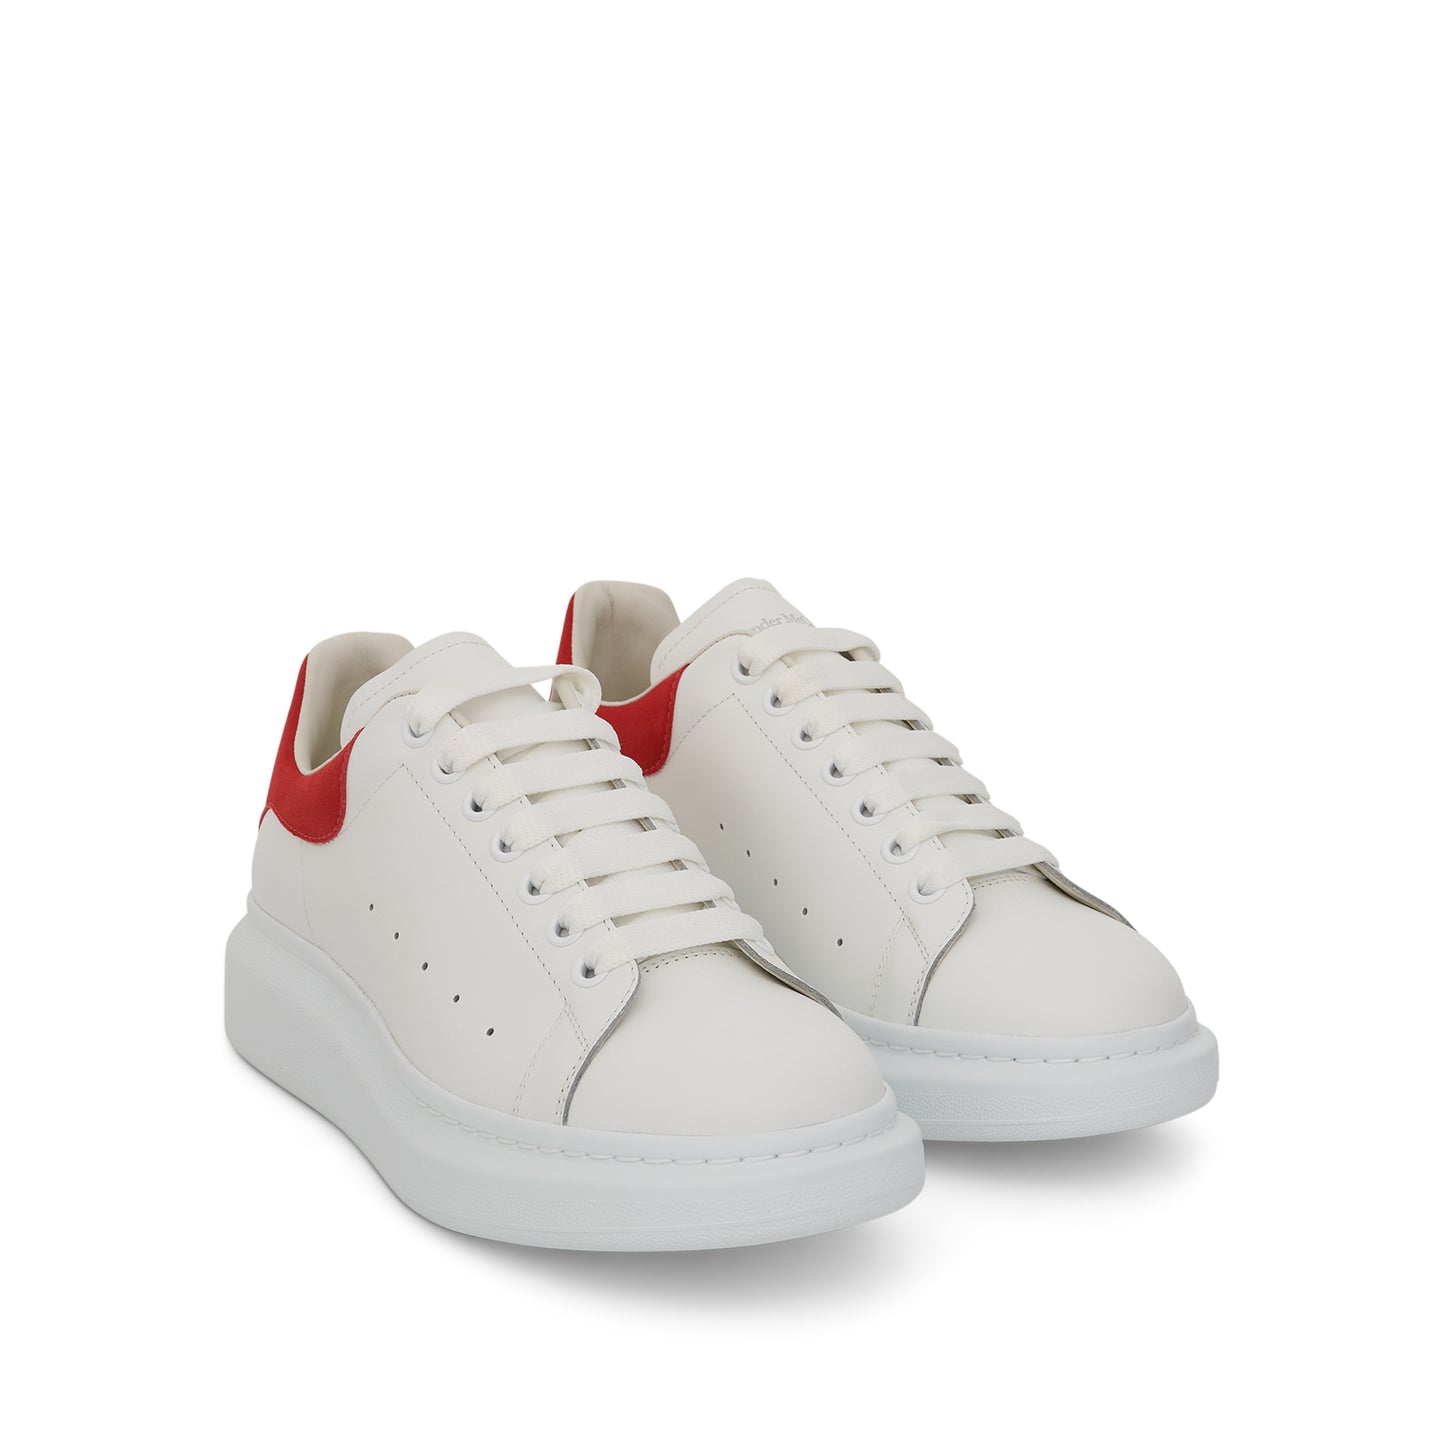 Larry Oversized Sneaker in White/Lust Red